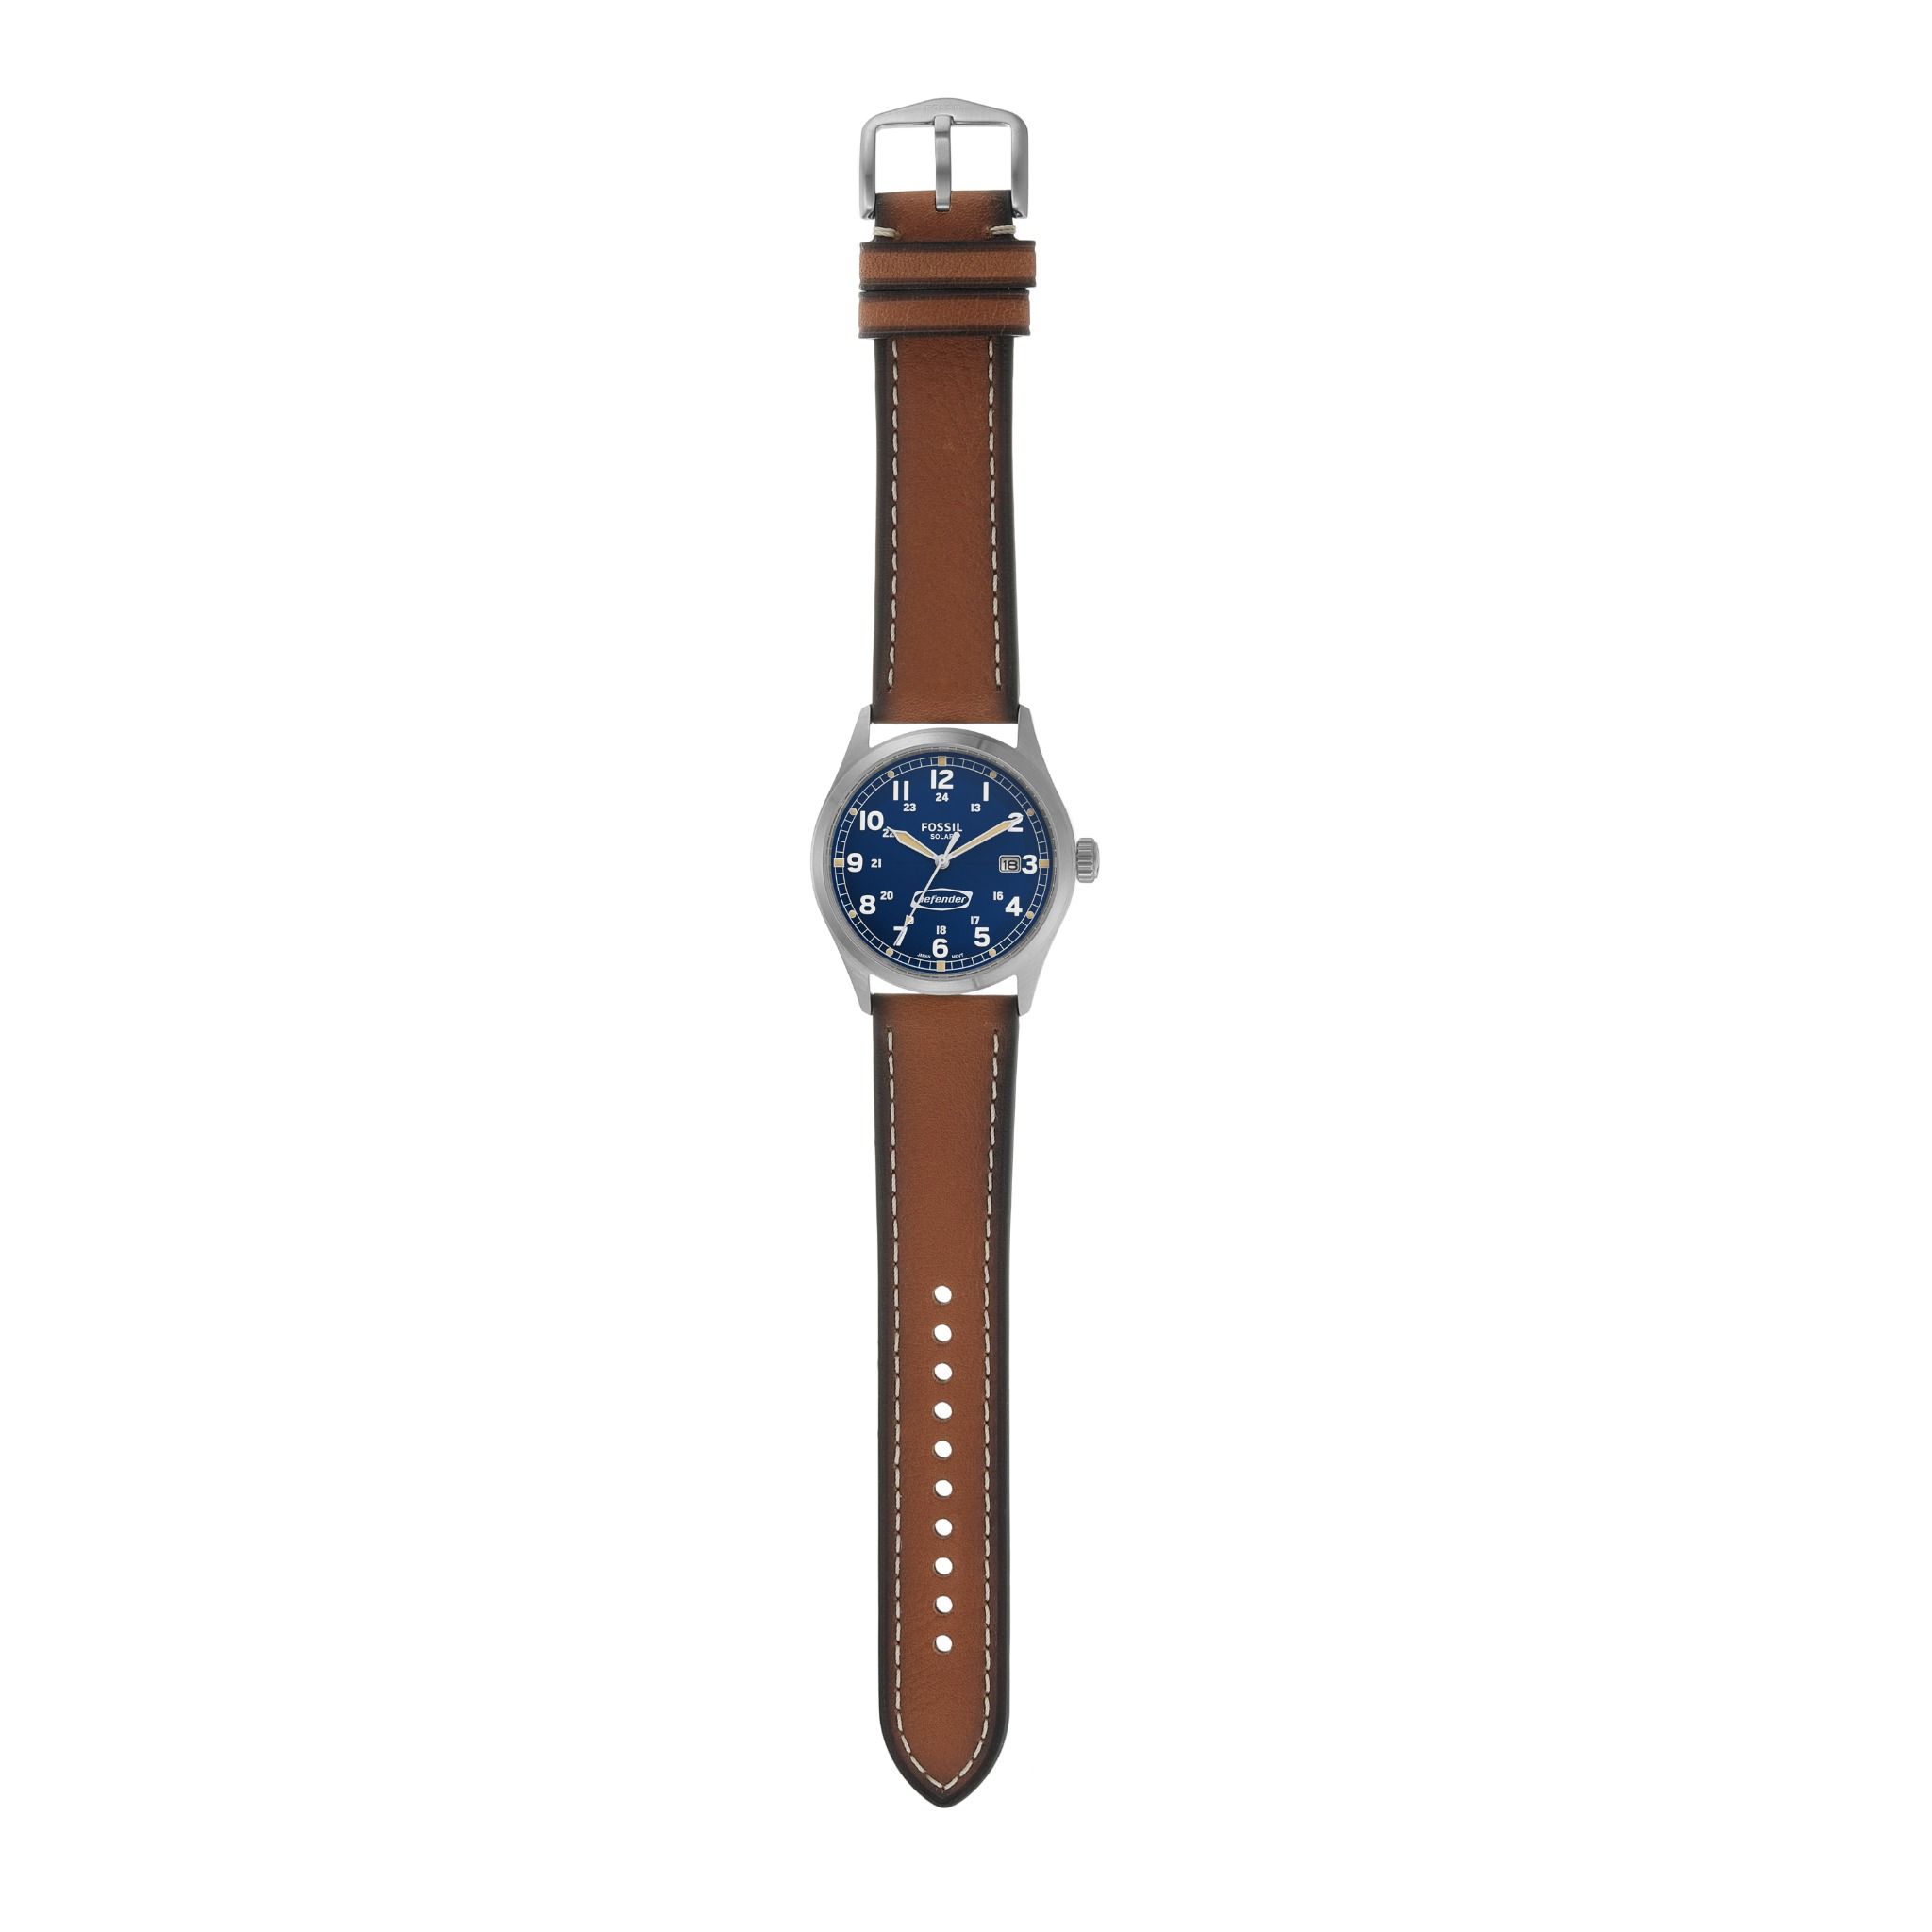  Đồng hồ nam Fossil Defender dây da FS5975 - màu nâu 